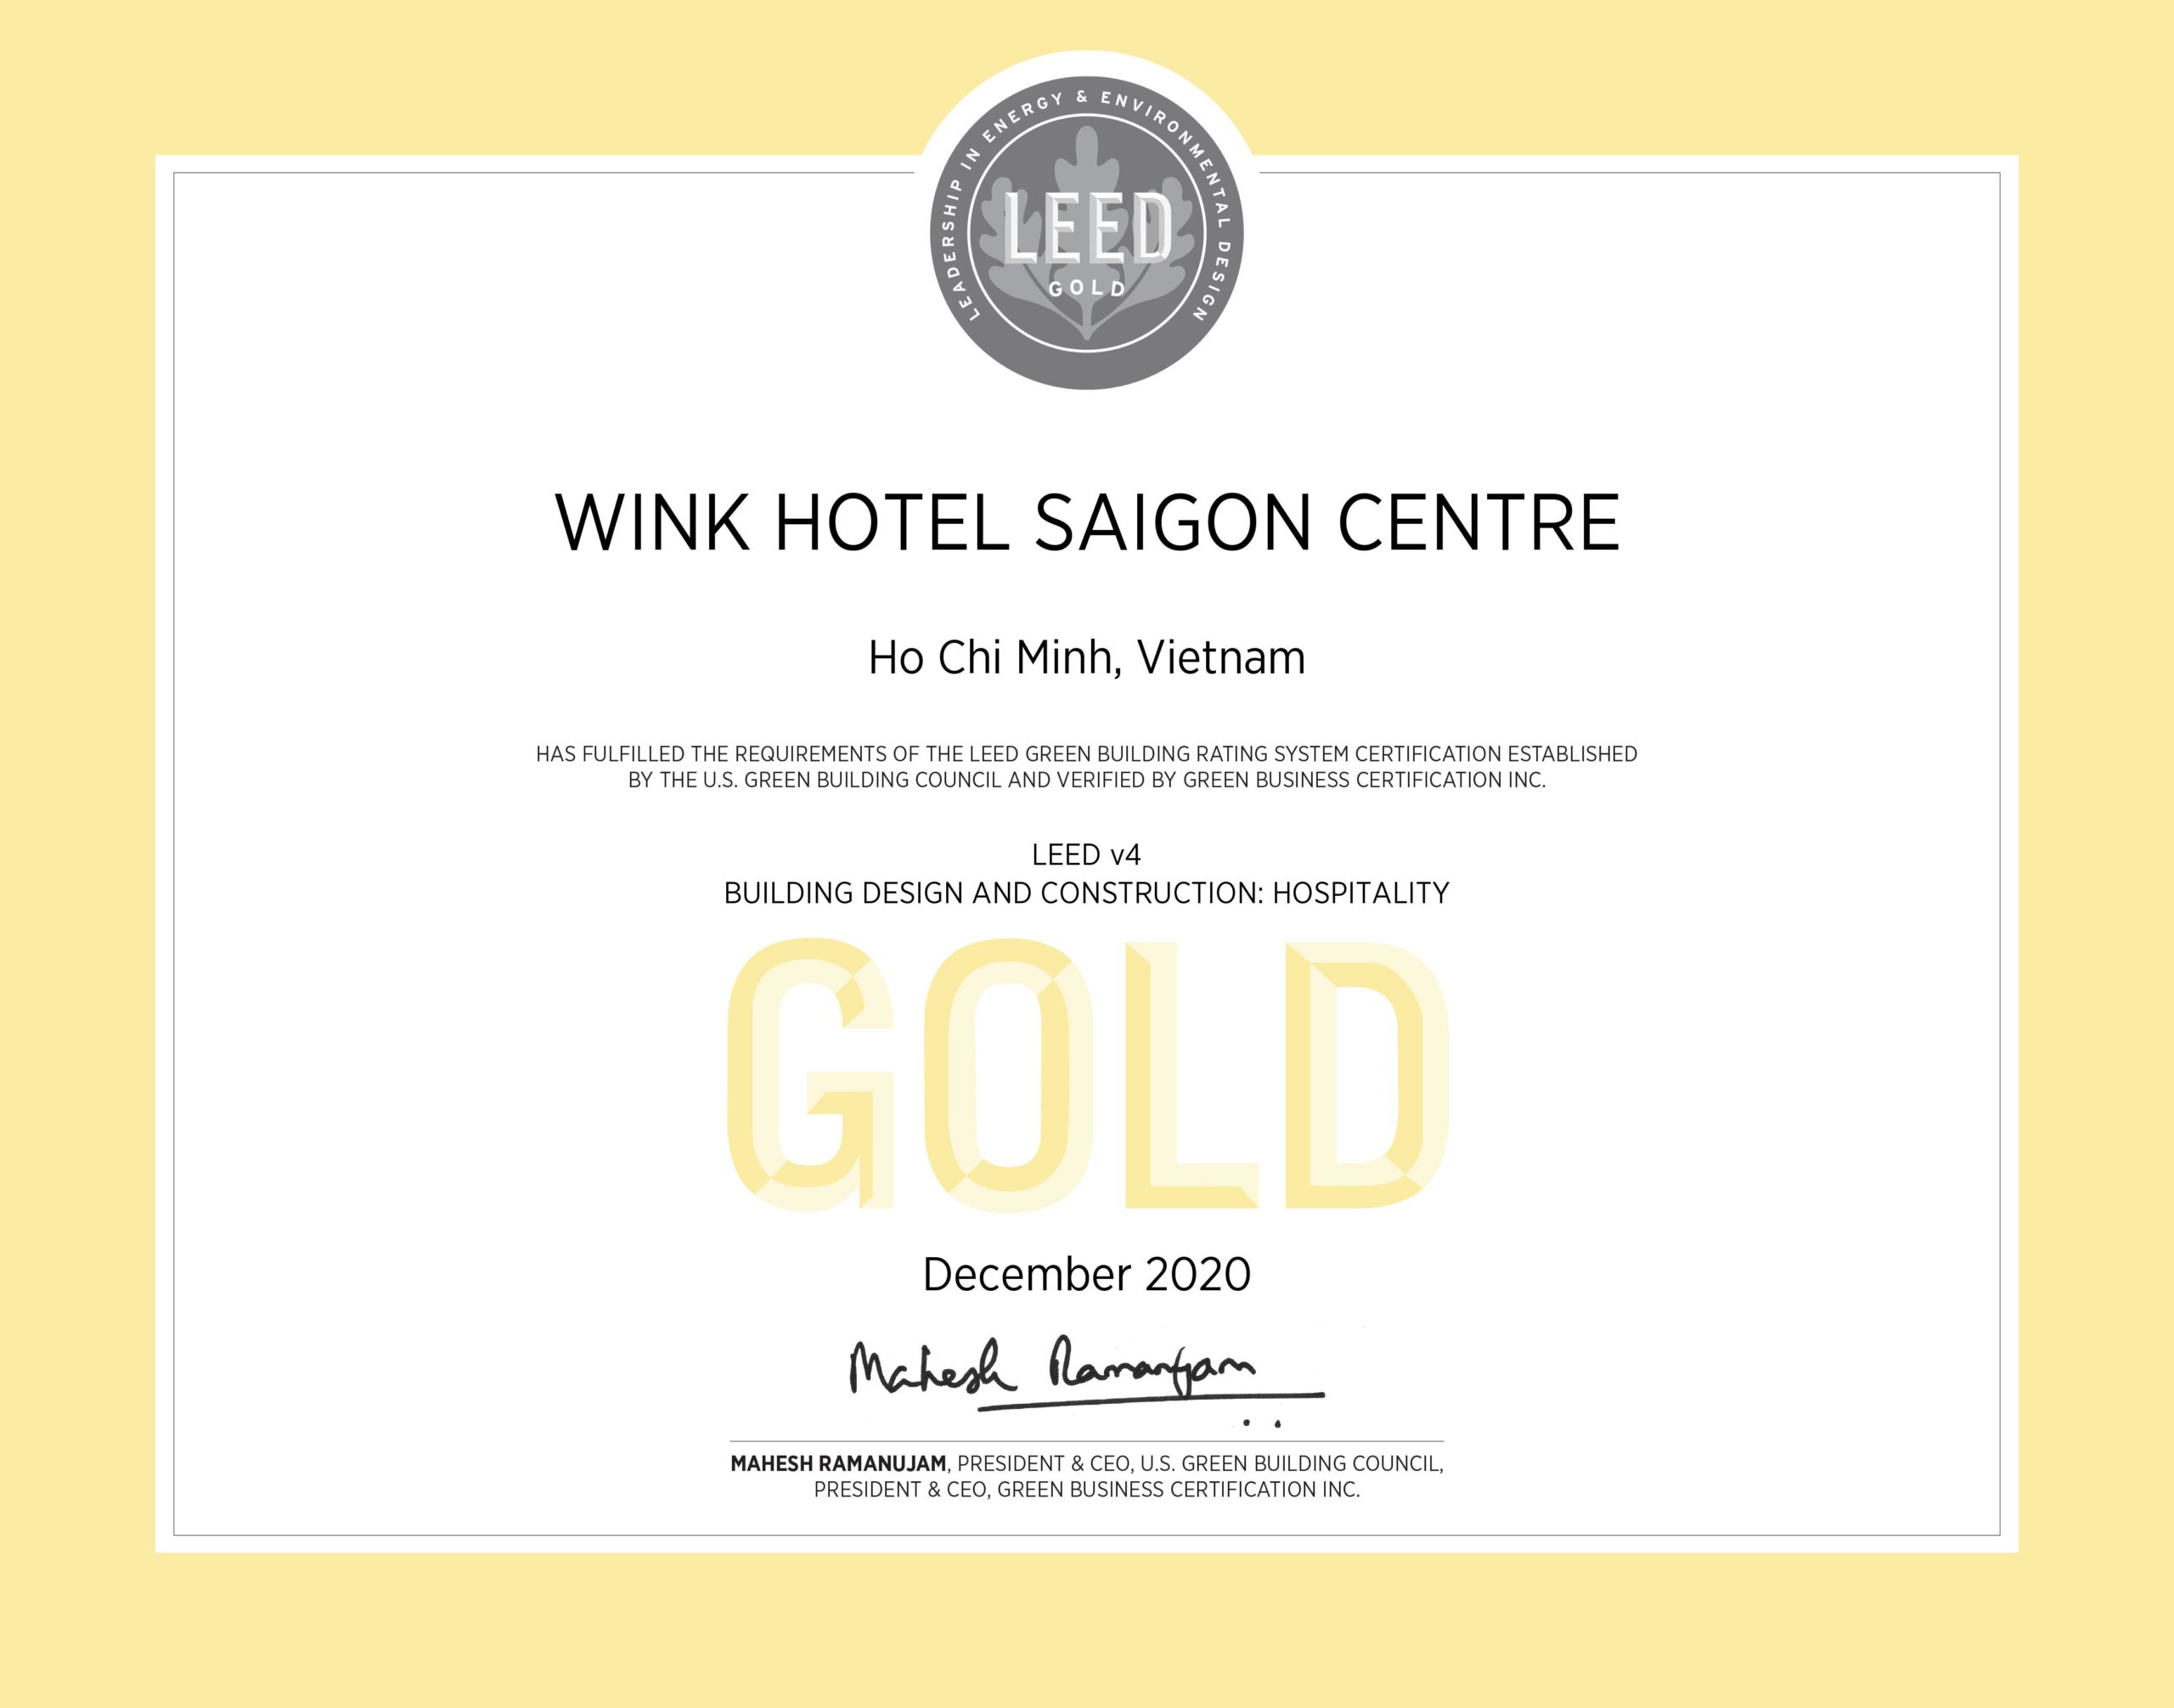 wink hotel saigon centre LEED certificate